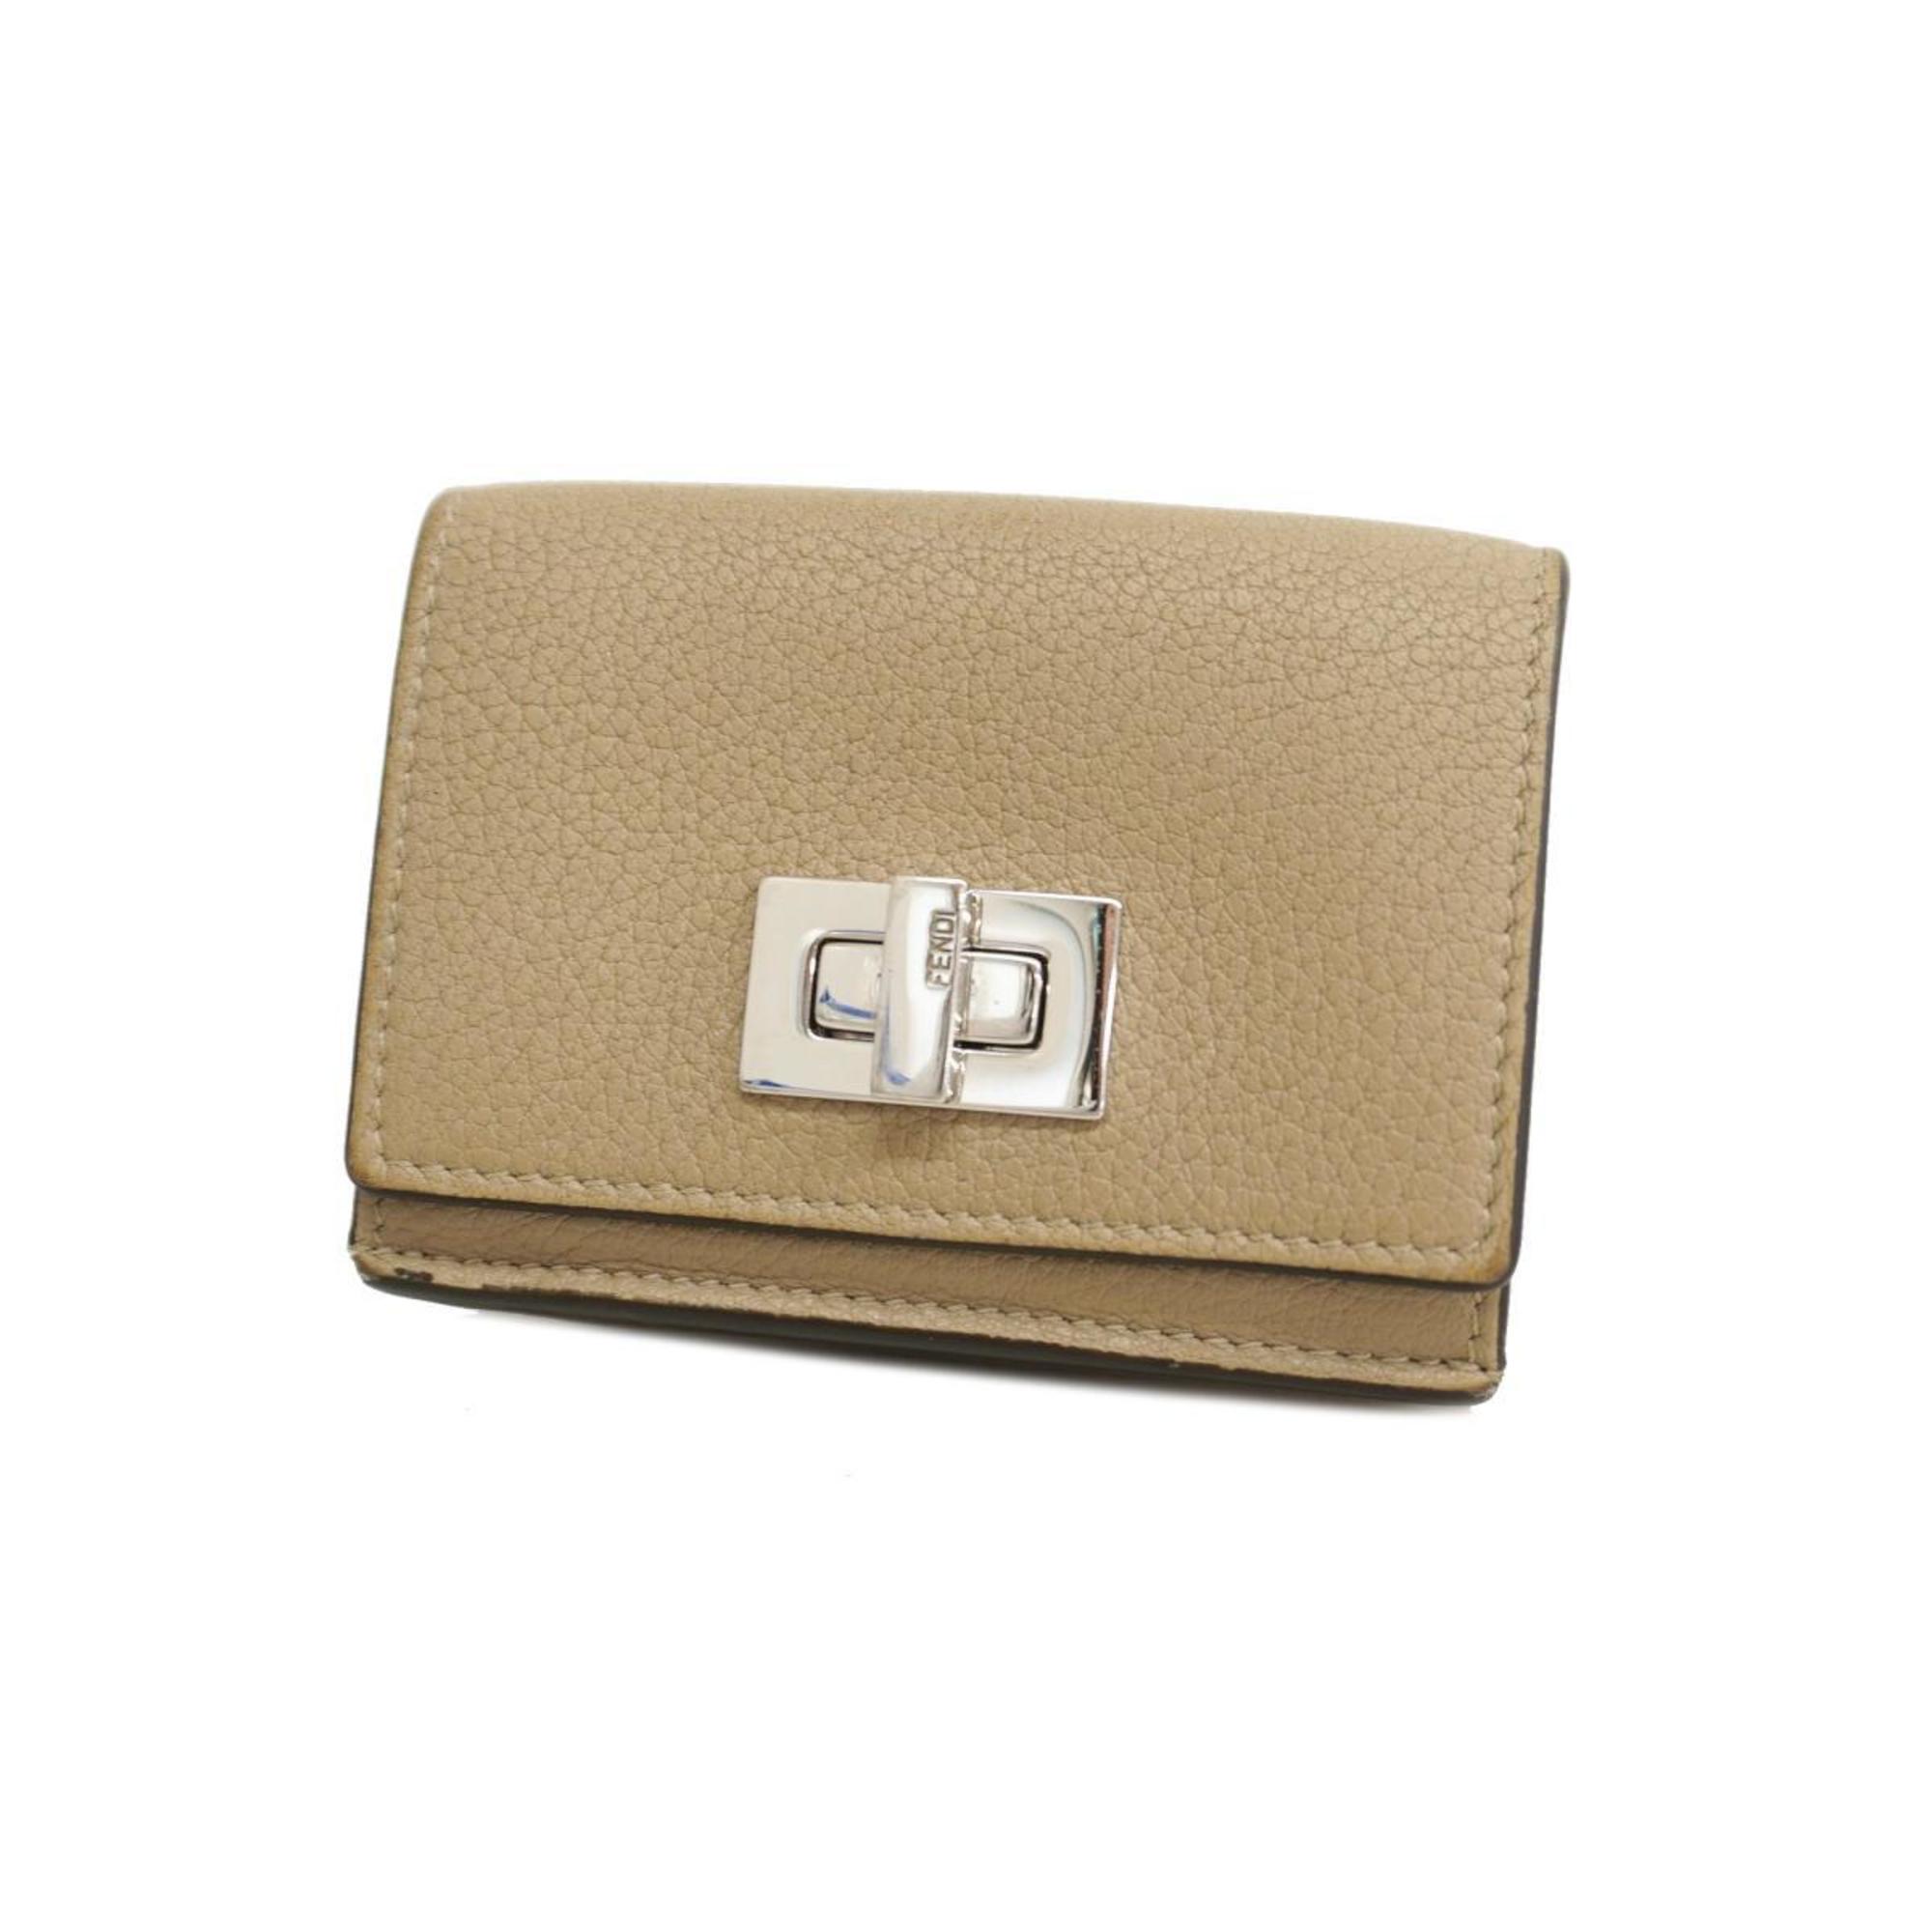 Fendi Tri-fold Wallet Leather Beige Women's